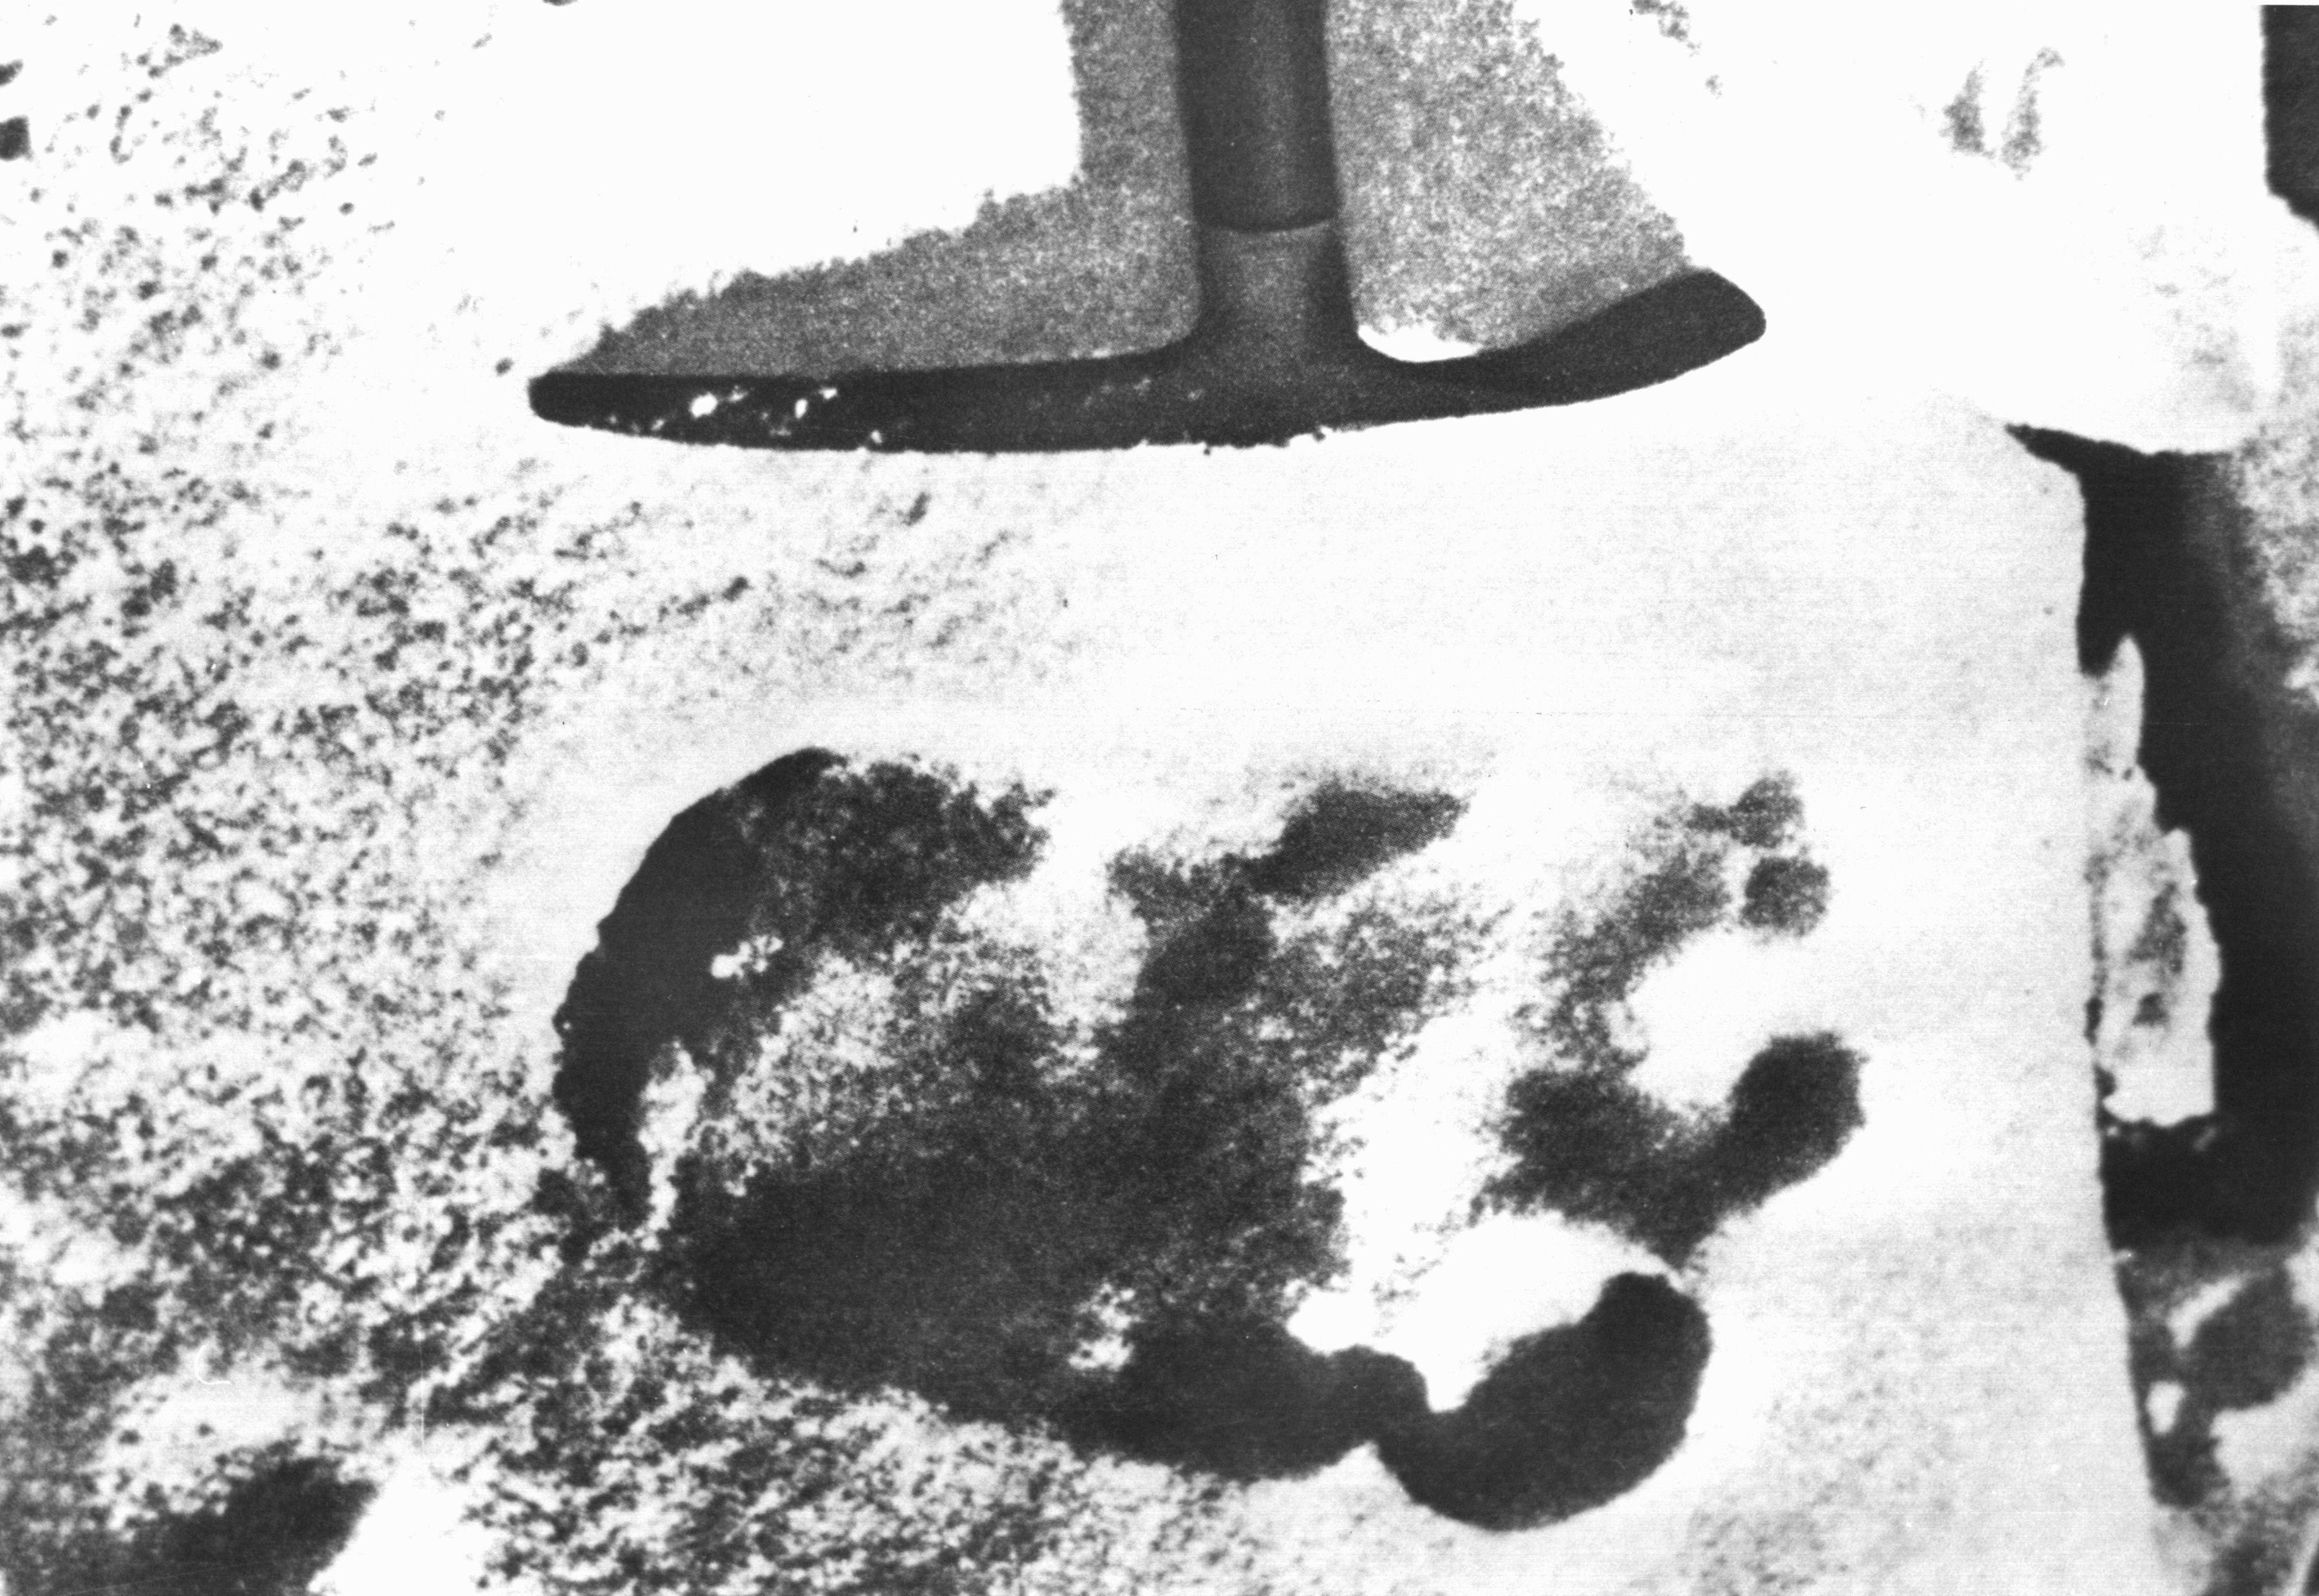 Bereits in den 50ern entdeckten BergsteigerInnen erste vermeintliche Fußspuren vom Yeti